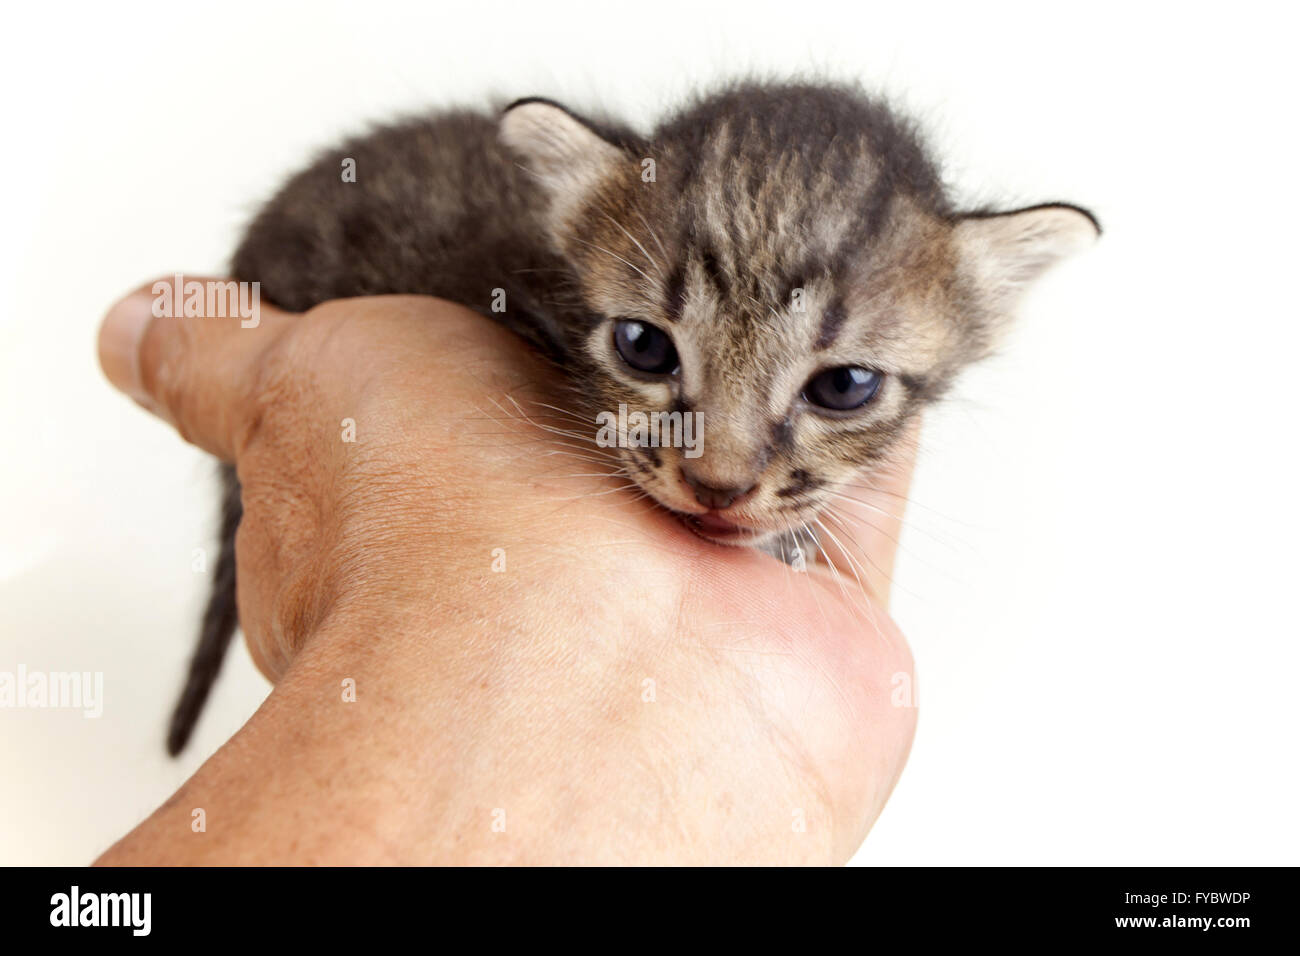 Mano umana tenendo delicatamente la faccia del neonato adorabile brown tabby kitten su sfondo bianco Foto Stock